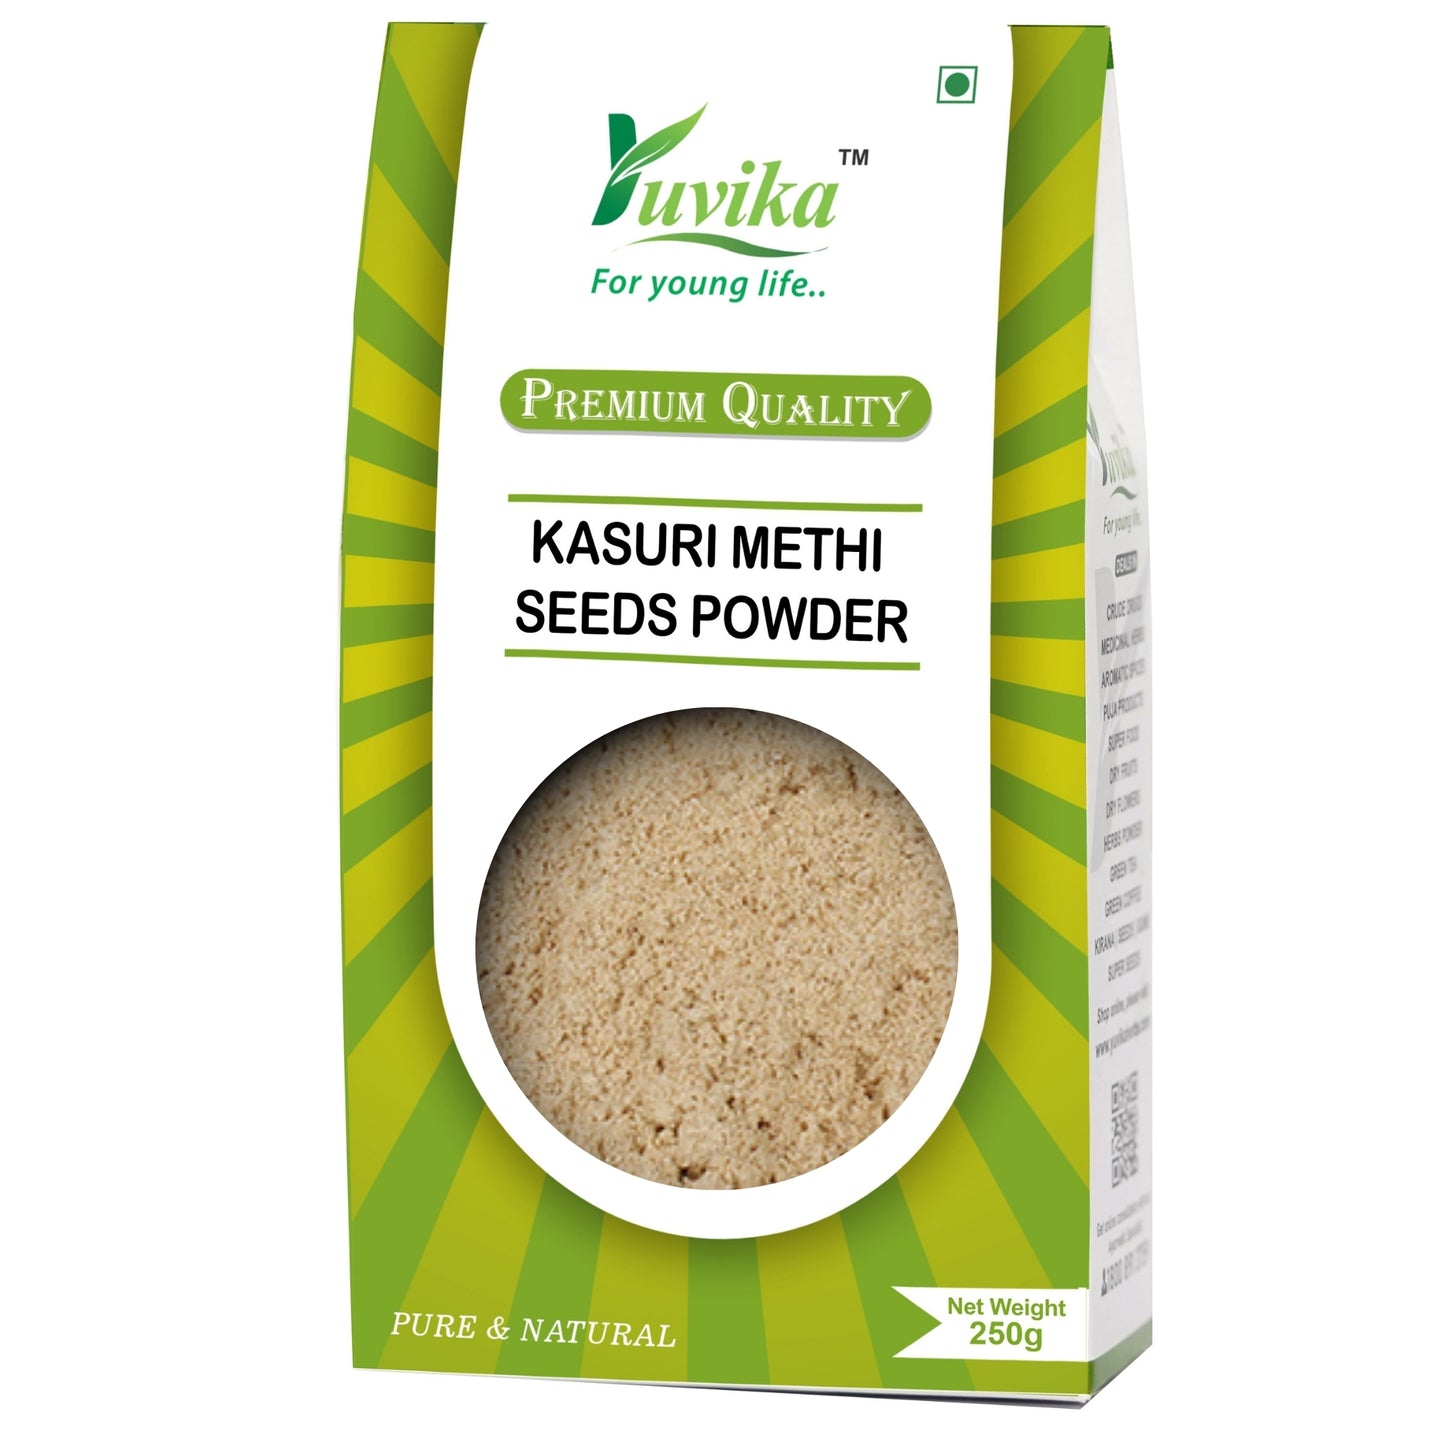 Kasuri Methi Seeds Powder - Champa Methi Powder (250g)